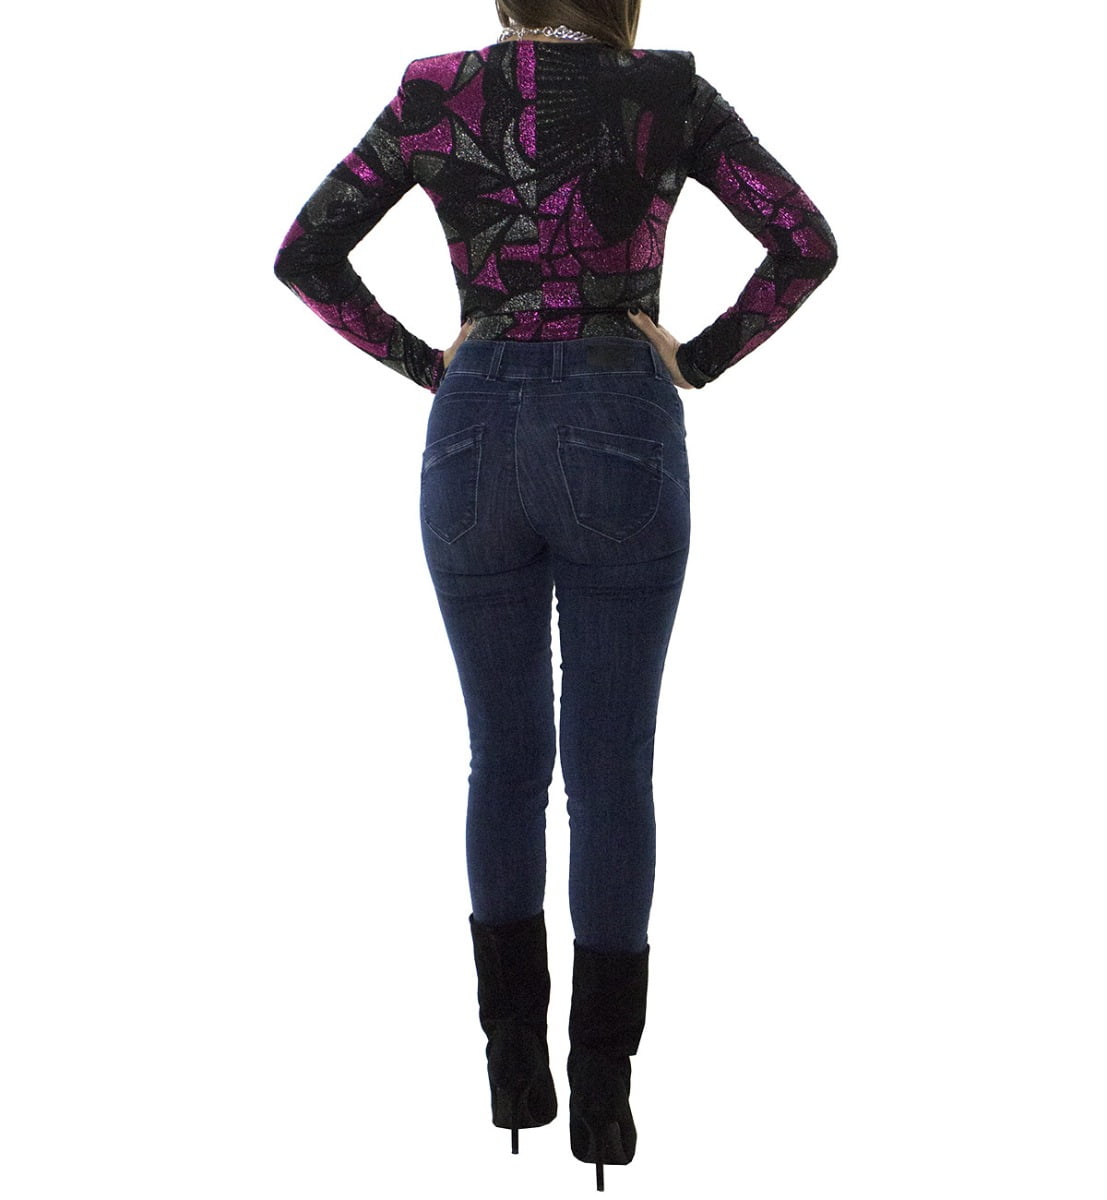 Jeans donna skinny elasticizzato lavaggio 0 modello 5 tasche effetto push up